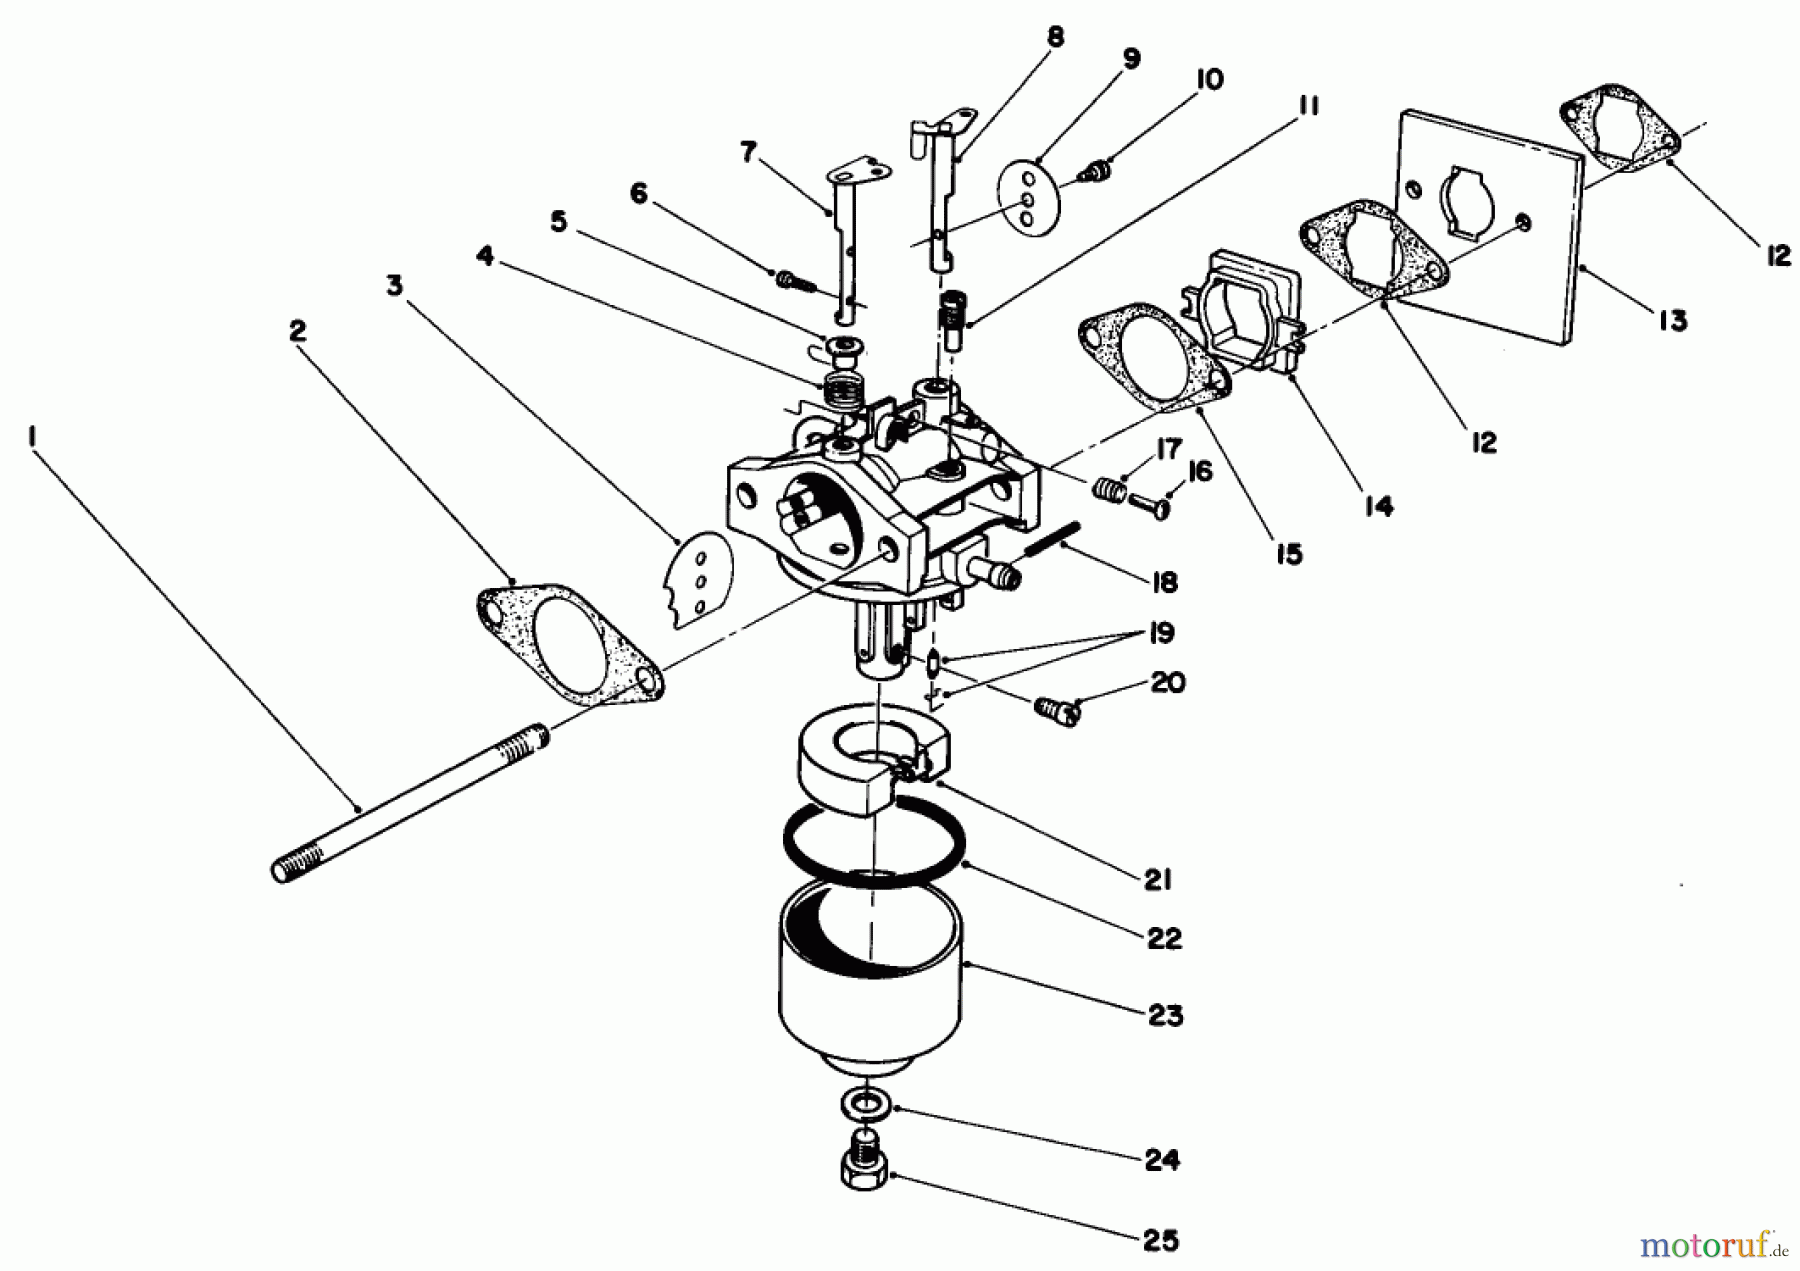  Toro Neu Mowers, Walk-Behind Seite 2 22025 - Toro Lawnmower, 1987 (7000001-7999999) ENGINE ASSEMBLY MODEL NO. 47PG6 #3